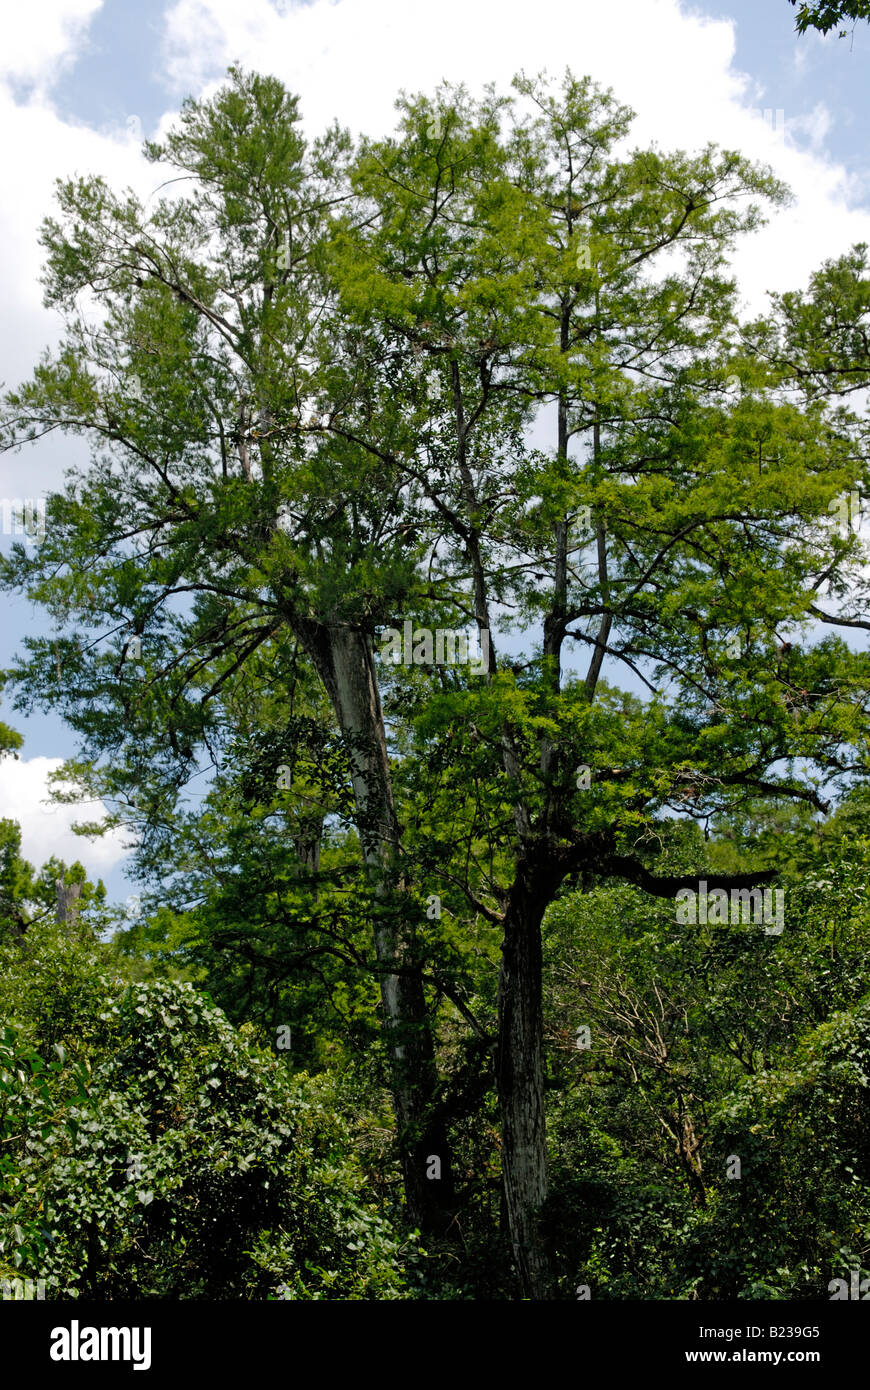 Grand vieux cyprès chauve Taxodium distichum croissance Corkscrew Swamp Sanctuary arbre Audubon en Floride Banque D'Images